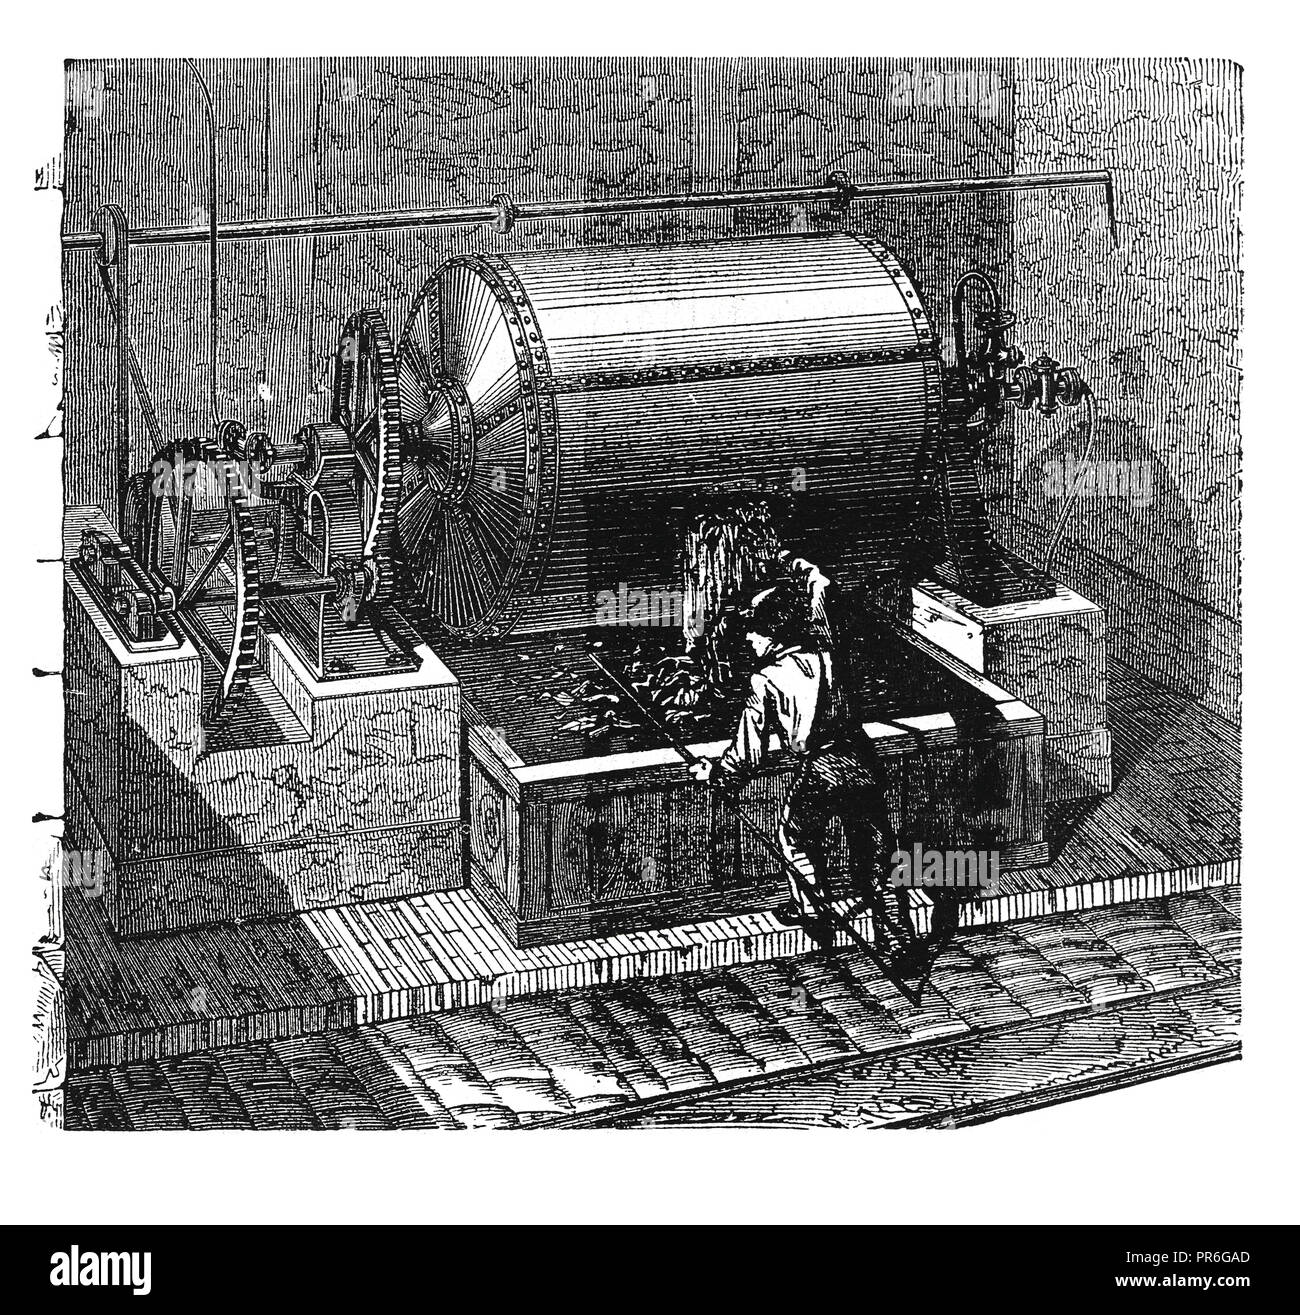 Siglo 19 ilustración de una caldera para el lavado de trapos para la industria del papel.Publicado en Novoveki Izumi u obrtu umjetnosti znanosti, i por el dr. Bogos Foto de stock